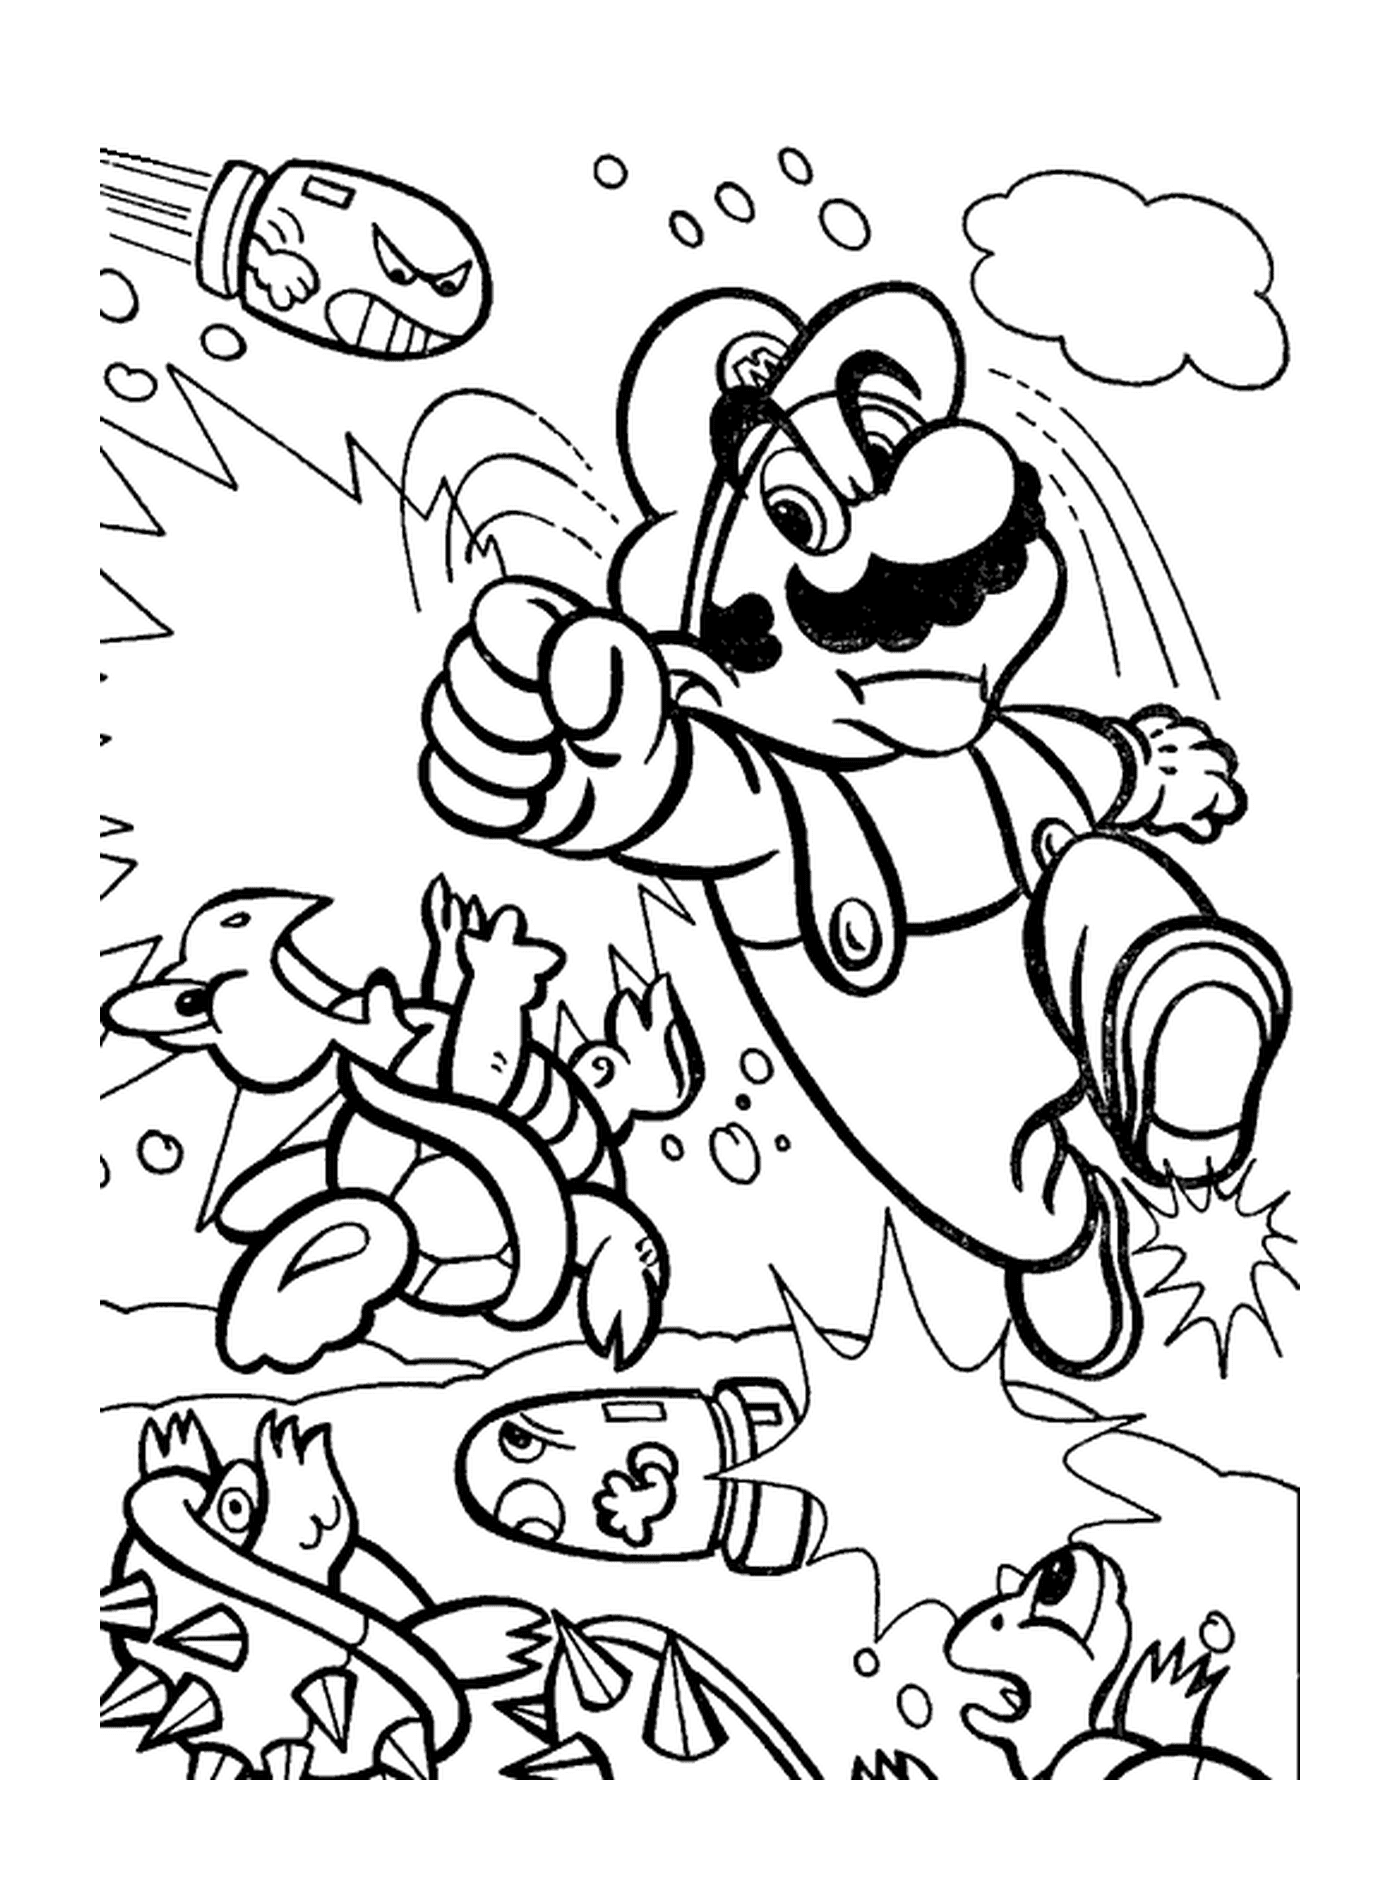  Mario luta pulando no ar 